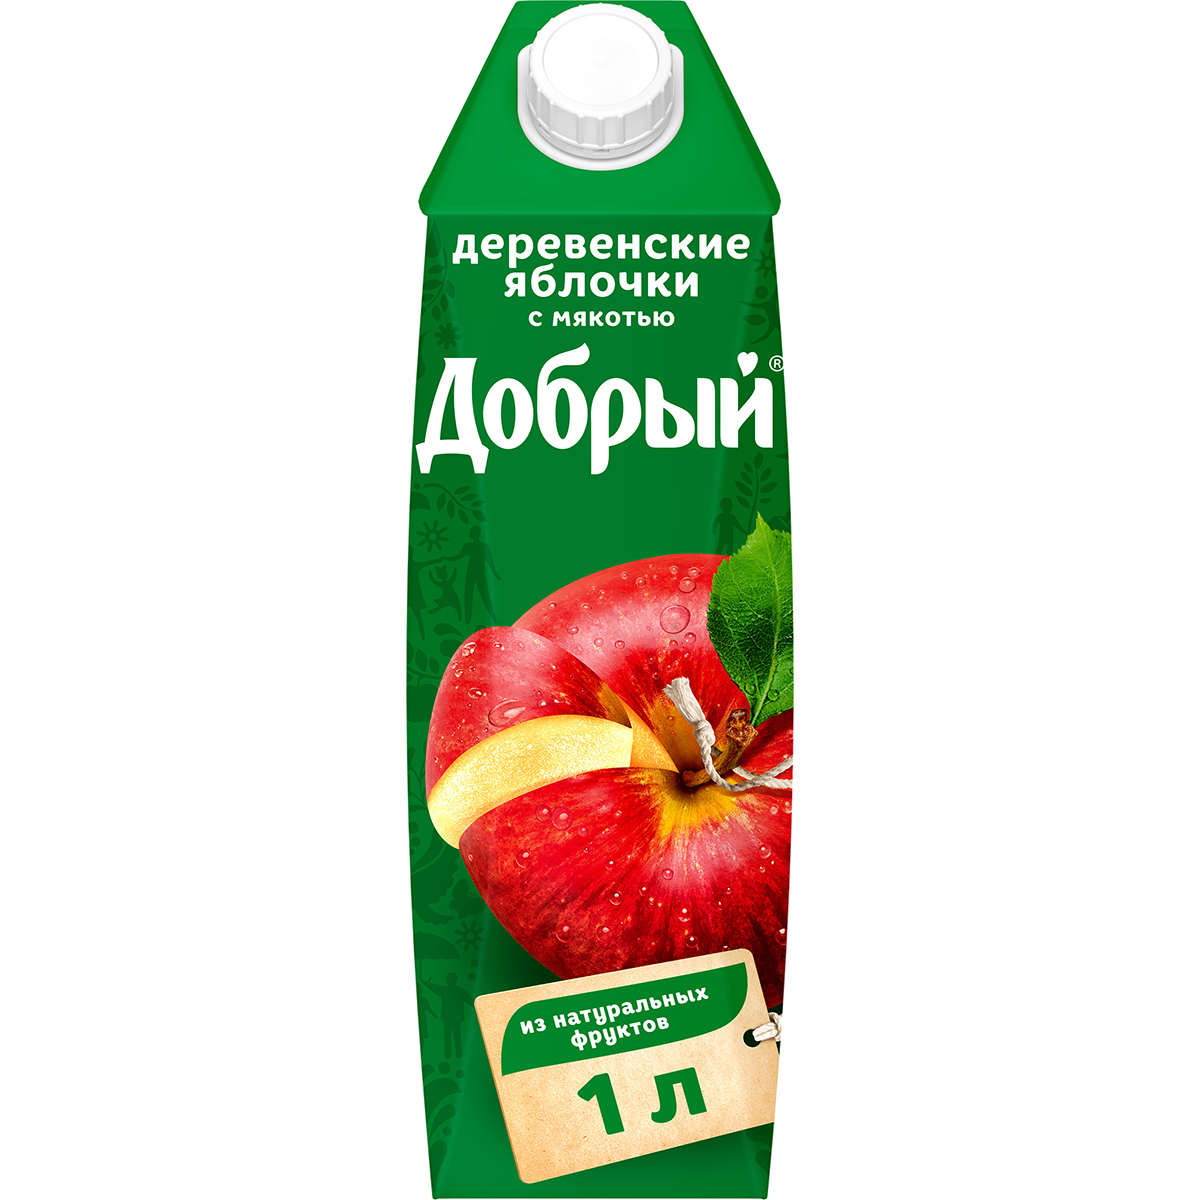 нектар добрый персик яблоко с мякотью 1 л Нектар Добрый Деревенские яблочки с мякотью 1 л